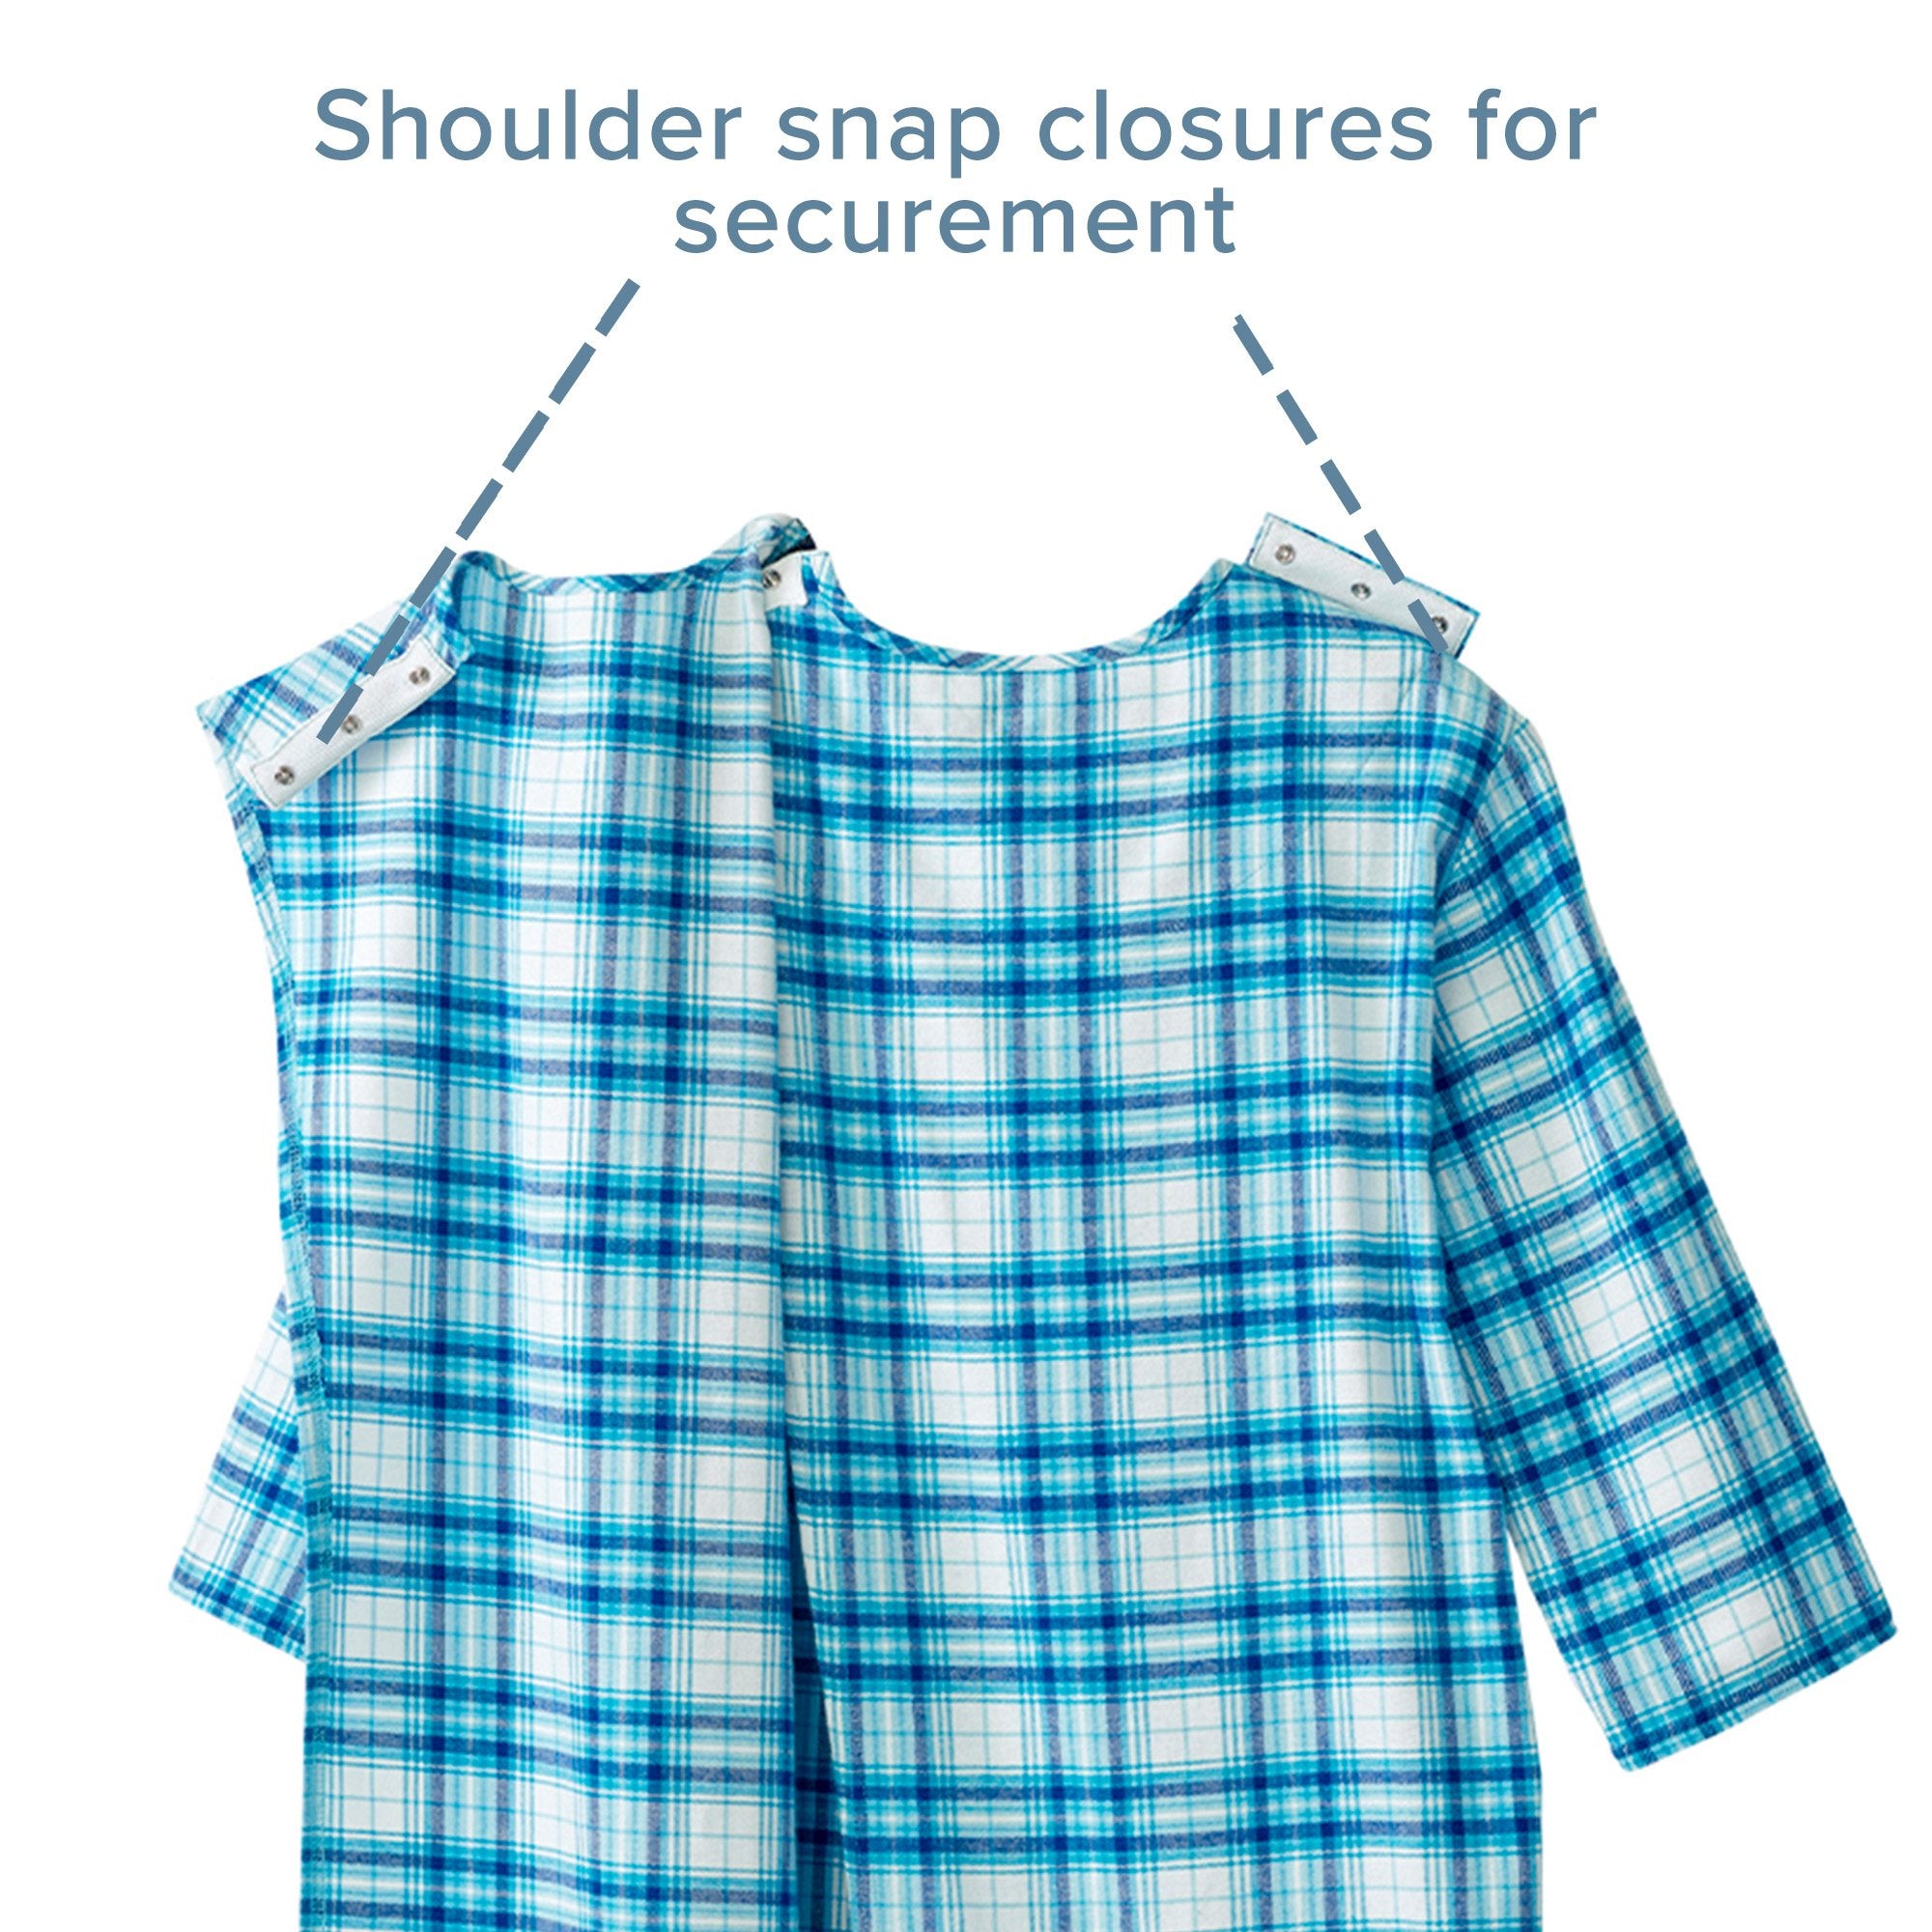 Silverts® Shoulder Snap Patient Exam Gown, Medium, Turquoise Plaid (1 Unit)